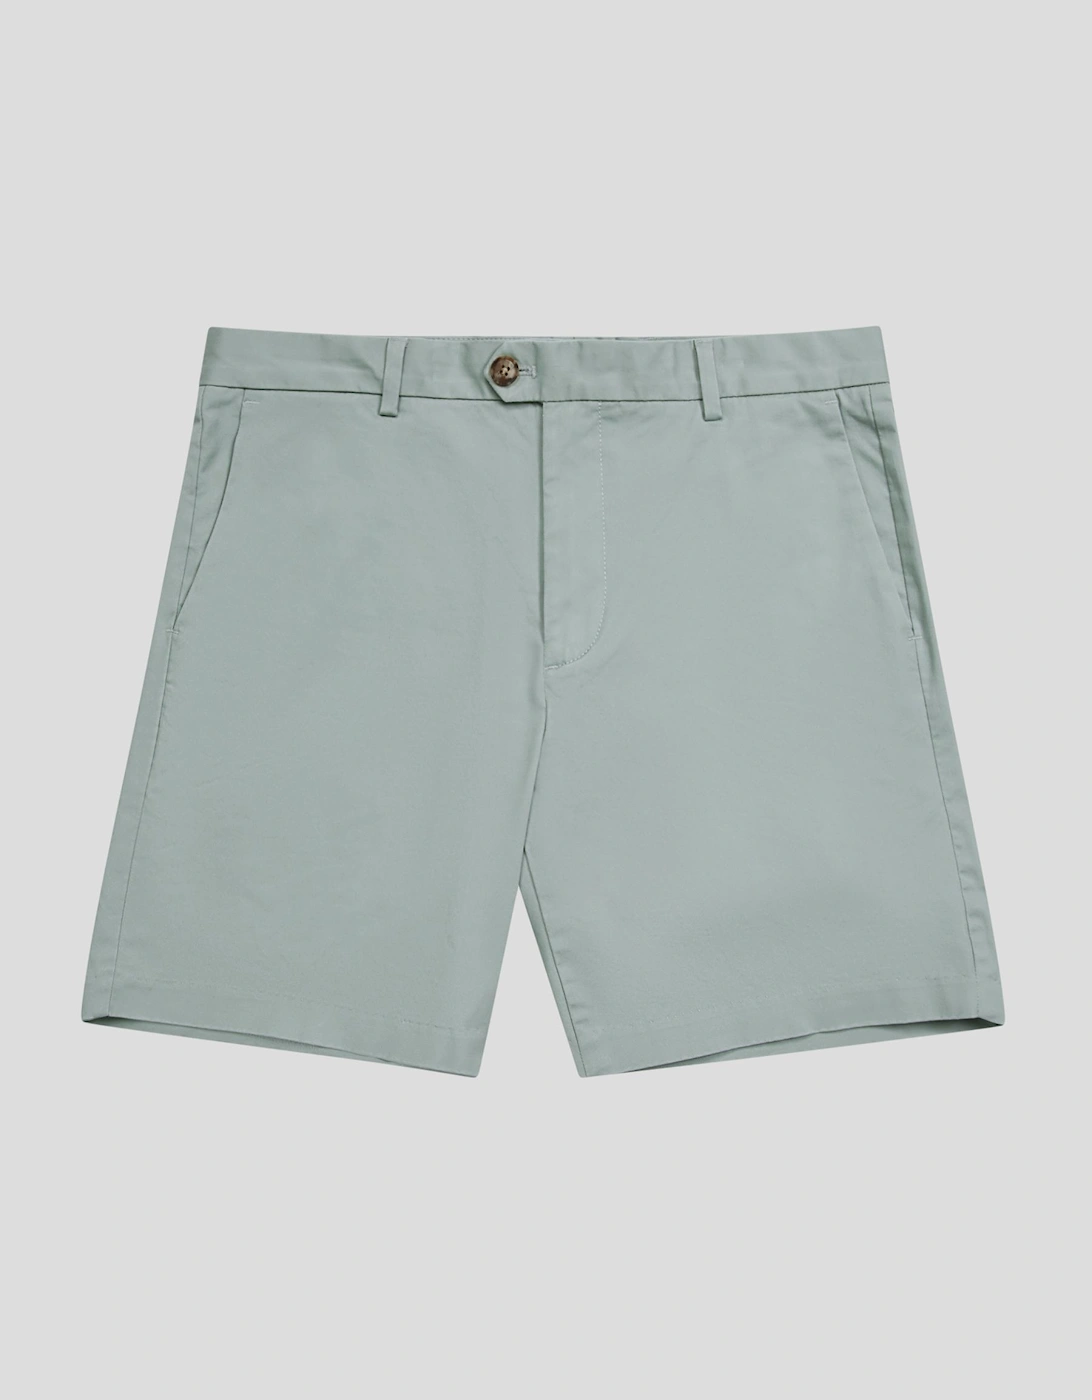 Short Length Casual Chino Shorts, 2 of 1